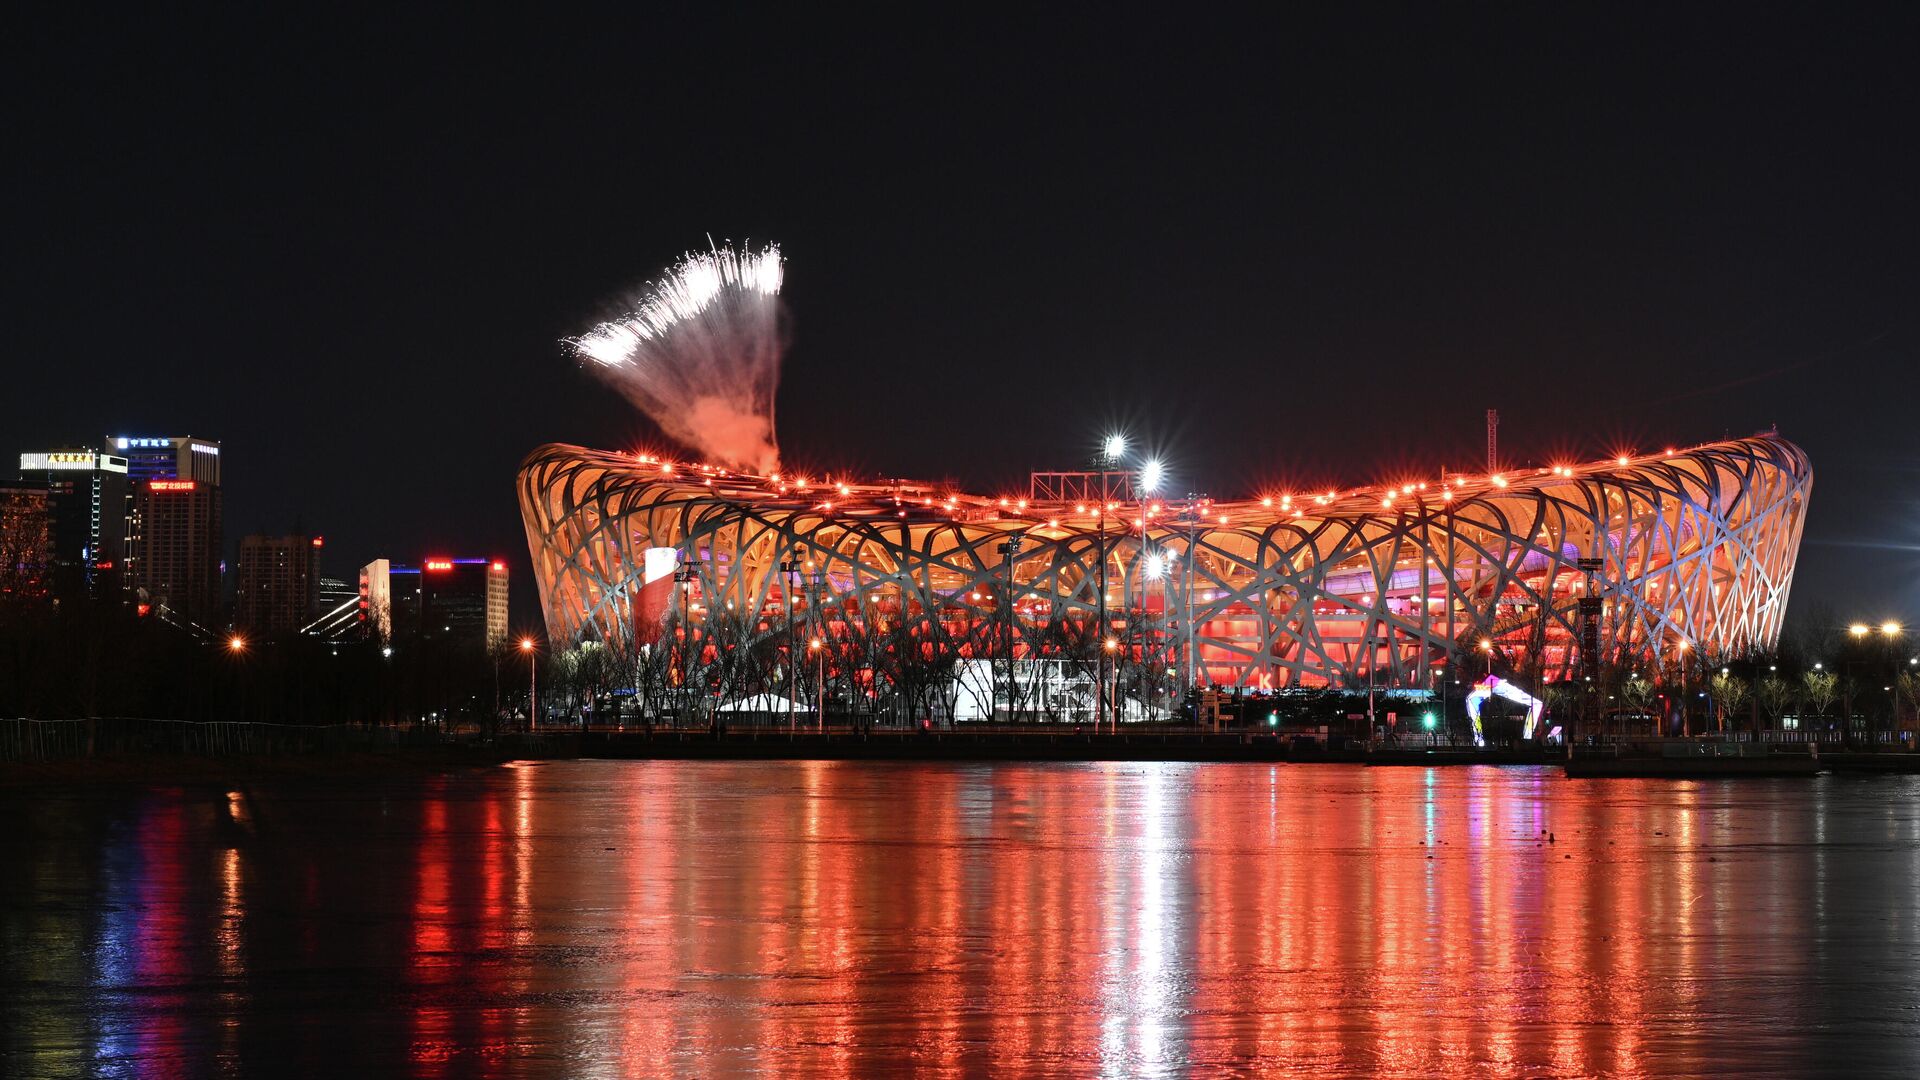 Салют над стадионом Птичье гнездо в Пекине на церемонии открытия XXIV Олимпийских игр 2022. - РИА Новости, 1920, 05.02.2022